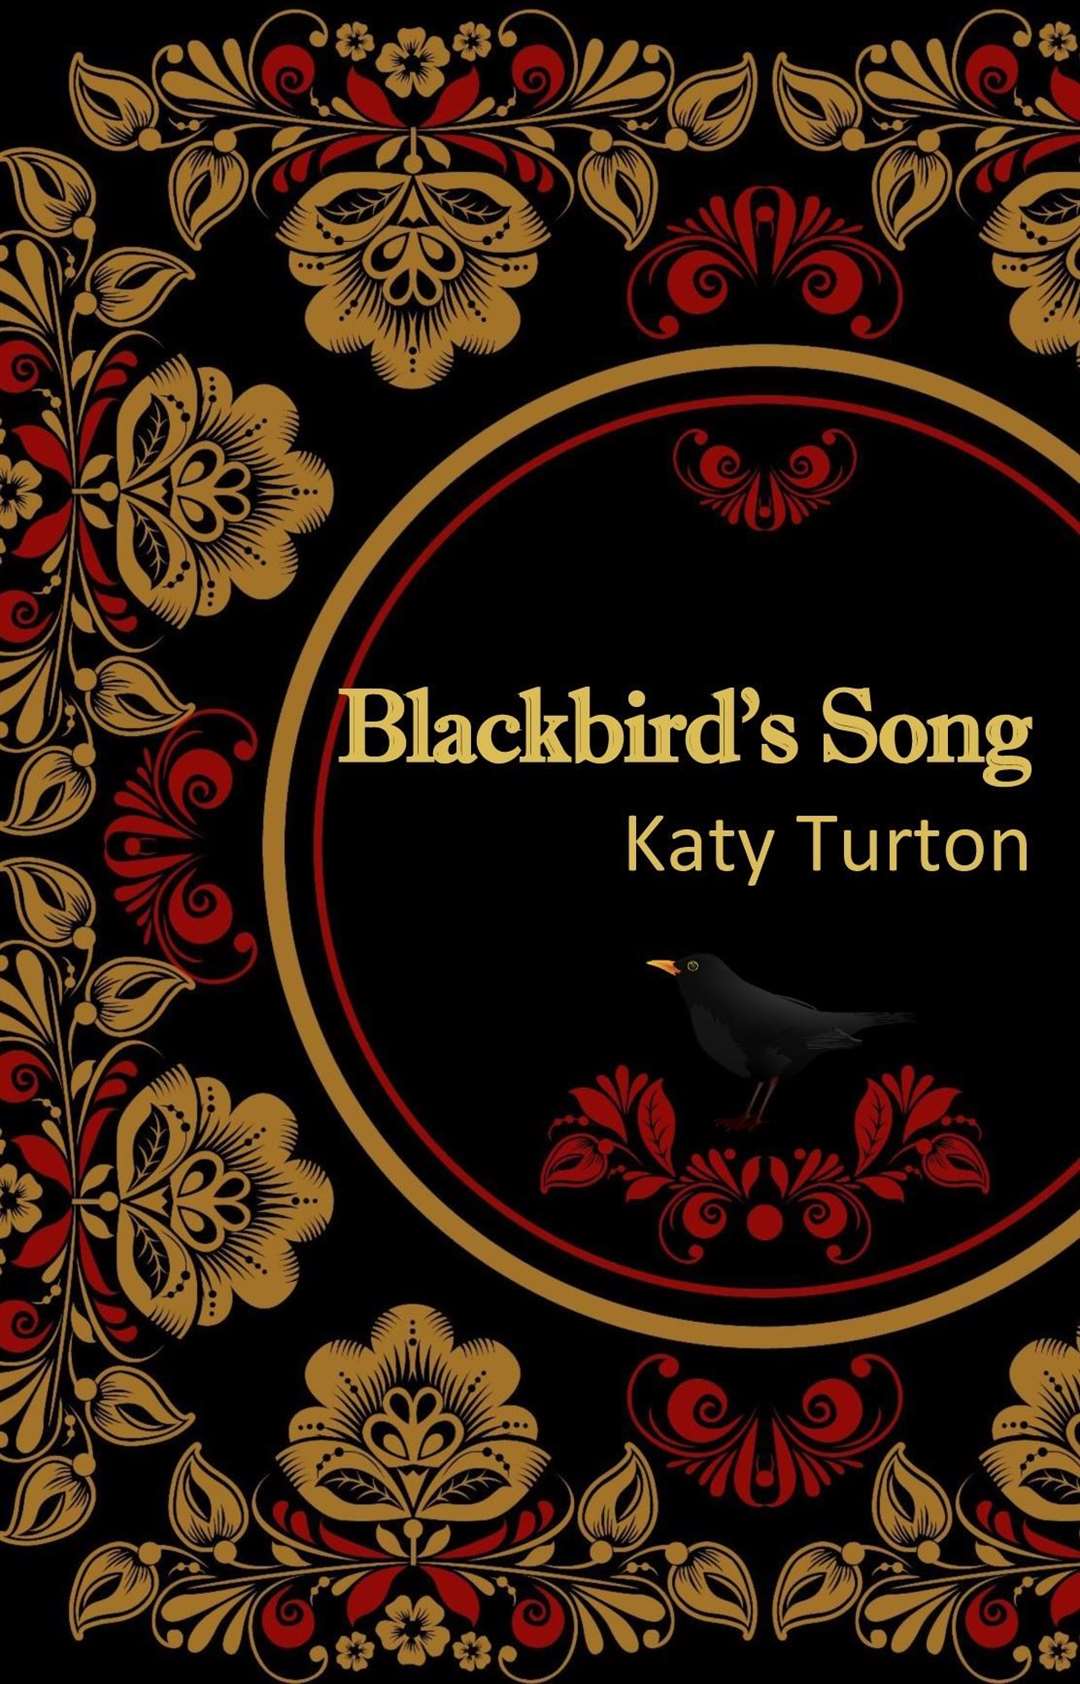 Blackbird's Song, set in Russia in 1905.